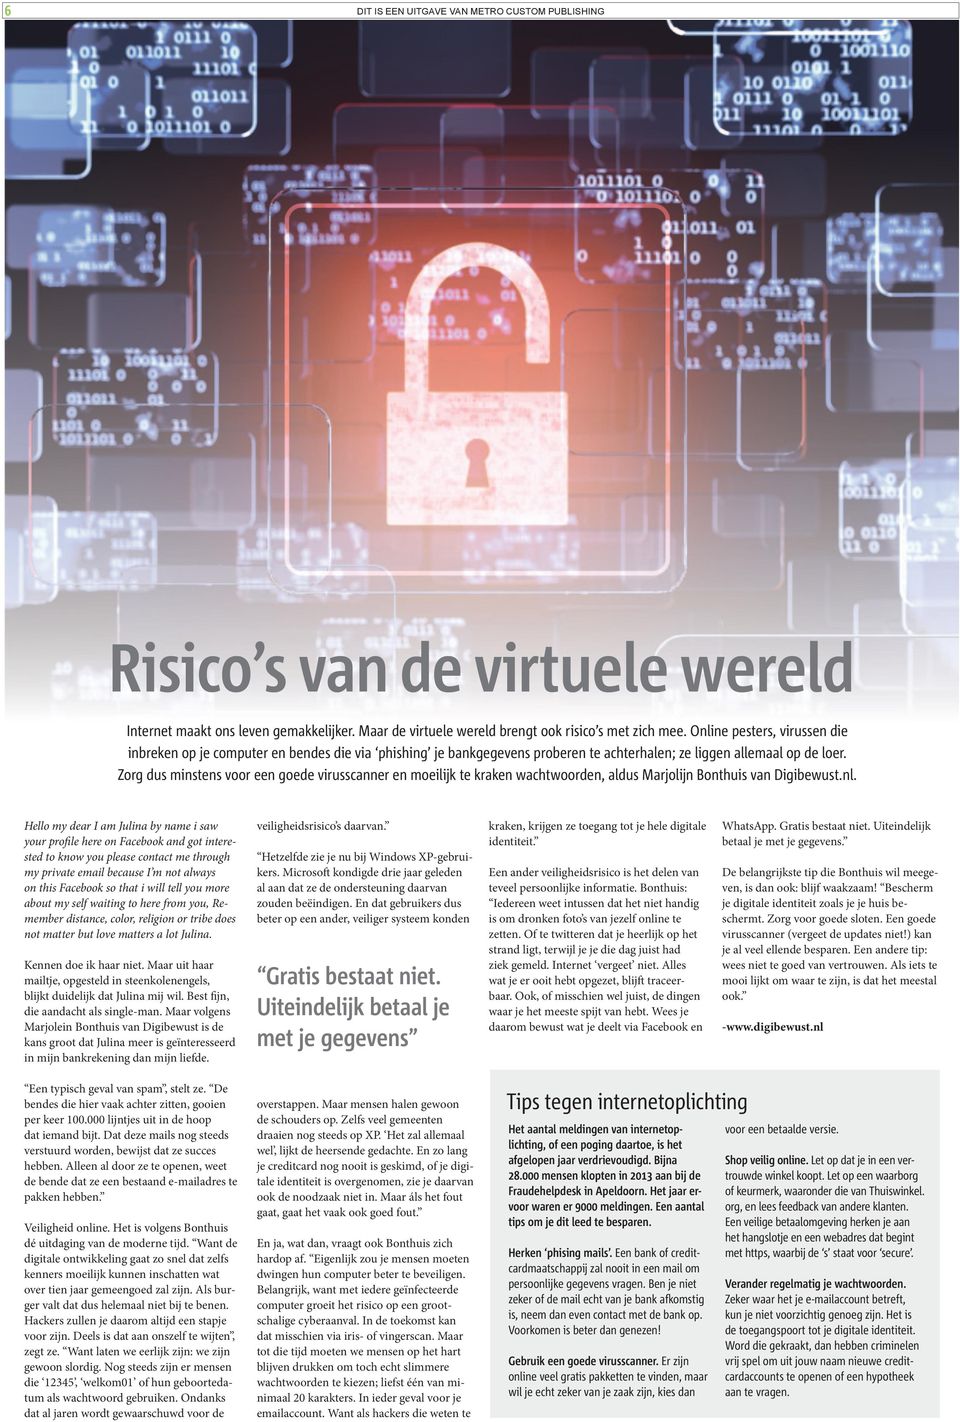 Zorg dus minstens voor een goede virusscanner en moeilijk te kraken wachtwoorden, aldus Marjolijn Bonthuis van Digibewust.nl.